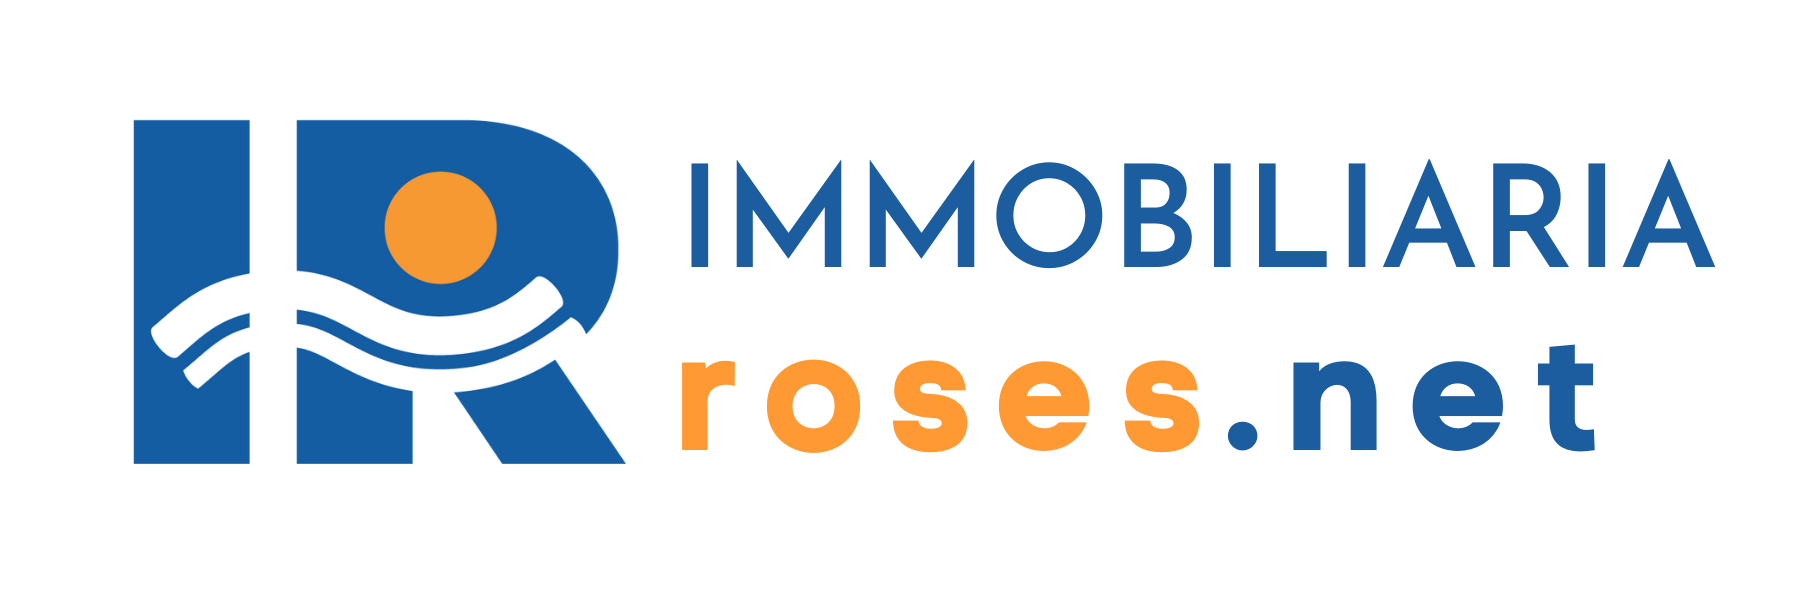 Inmobiliaria Immo Roses.net Roses